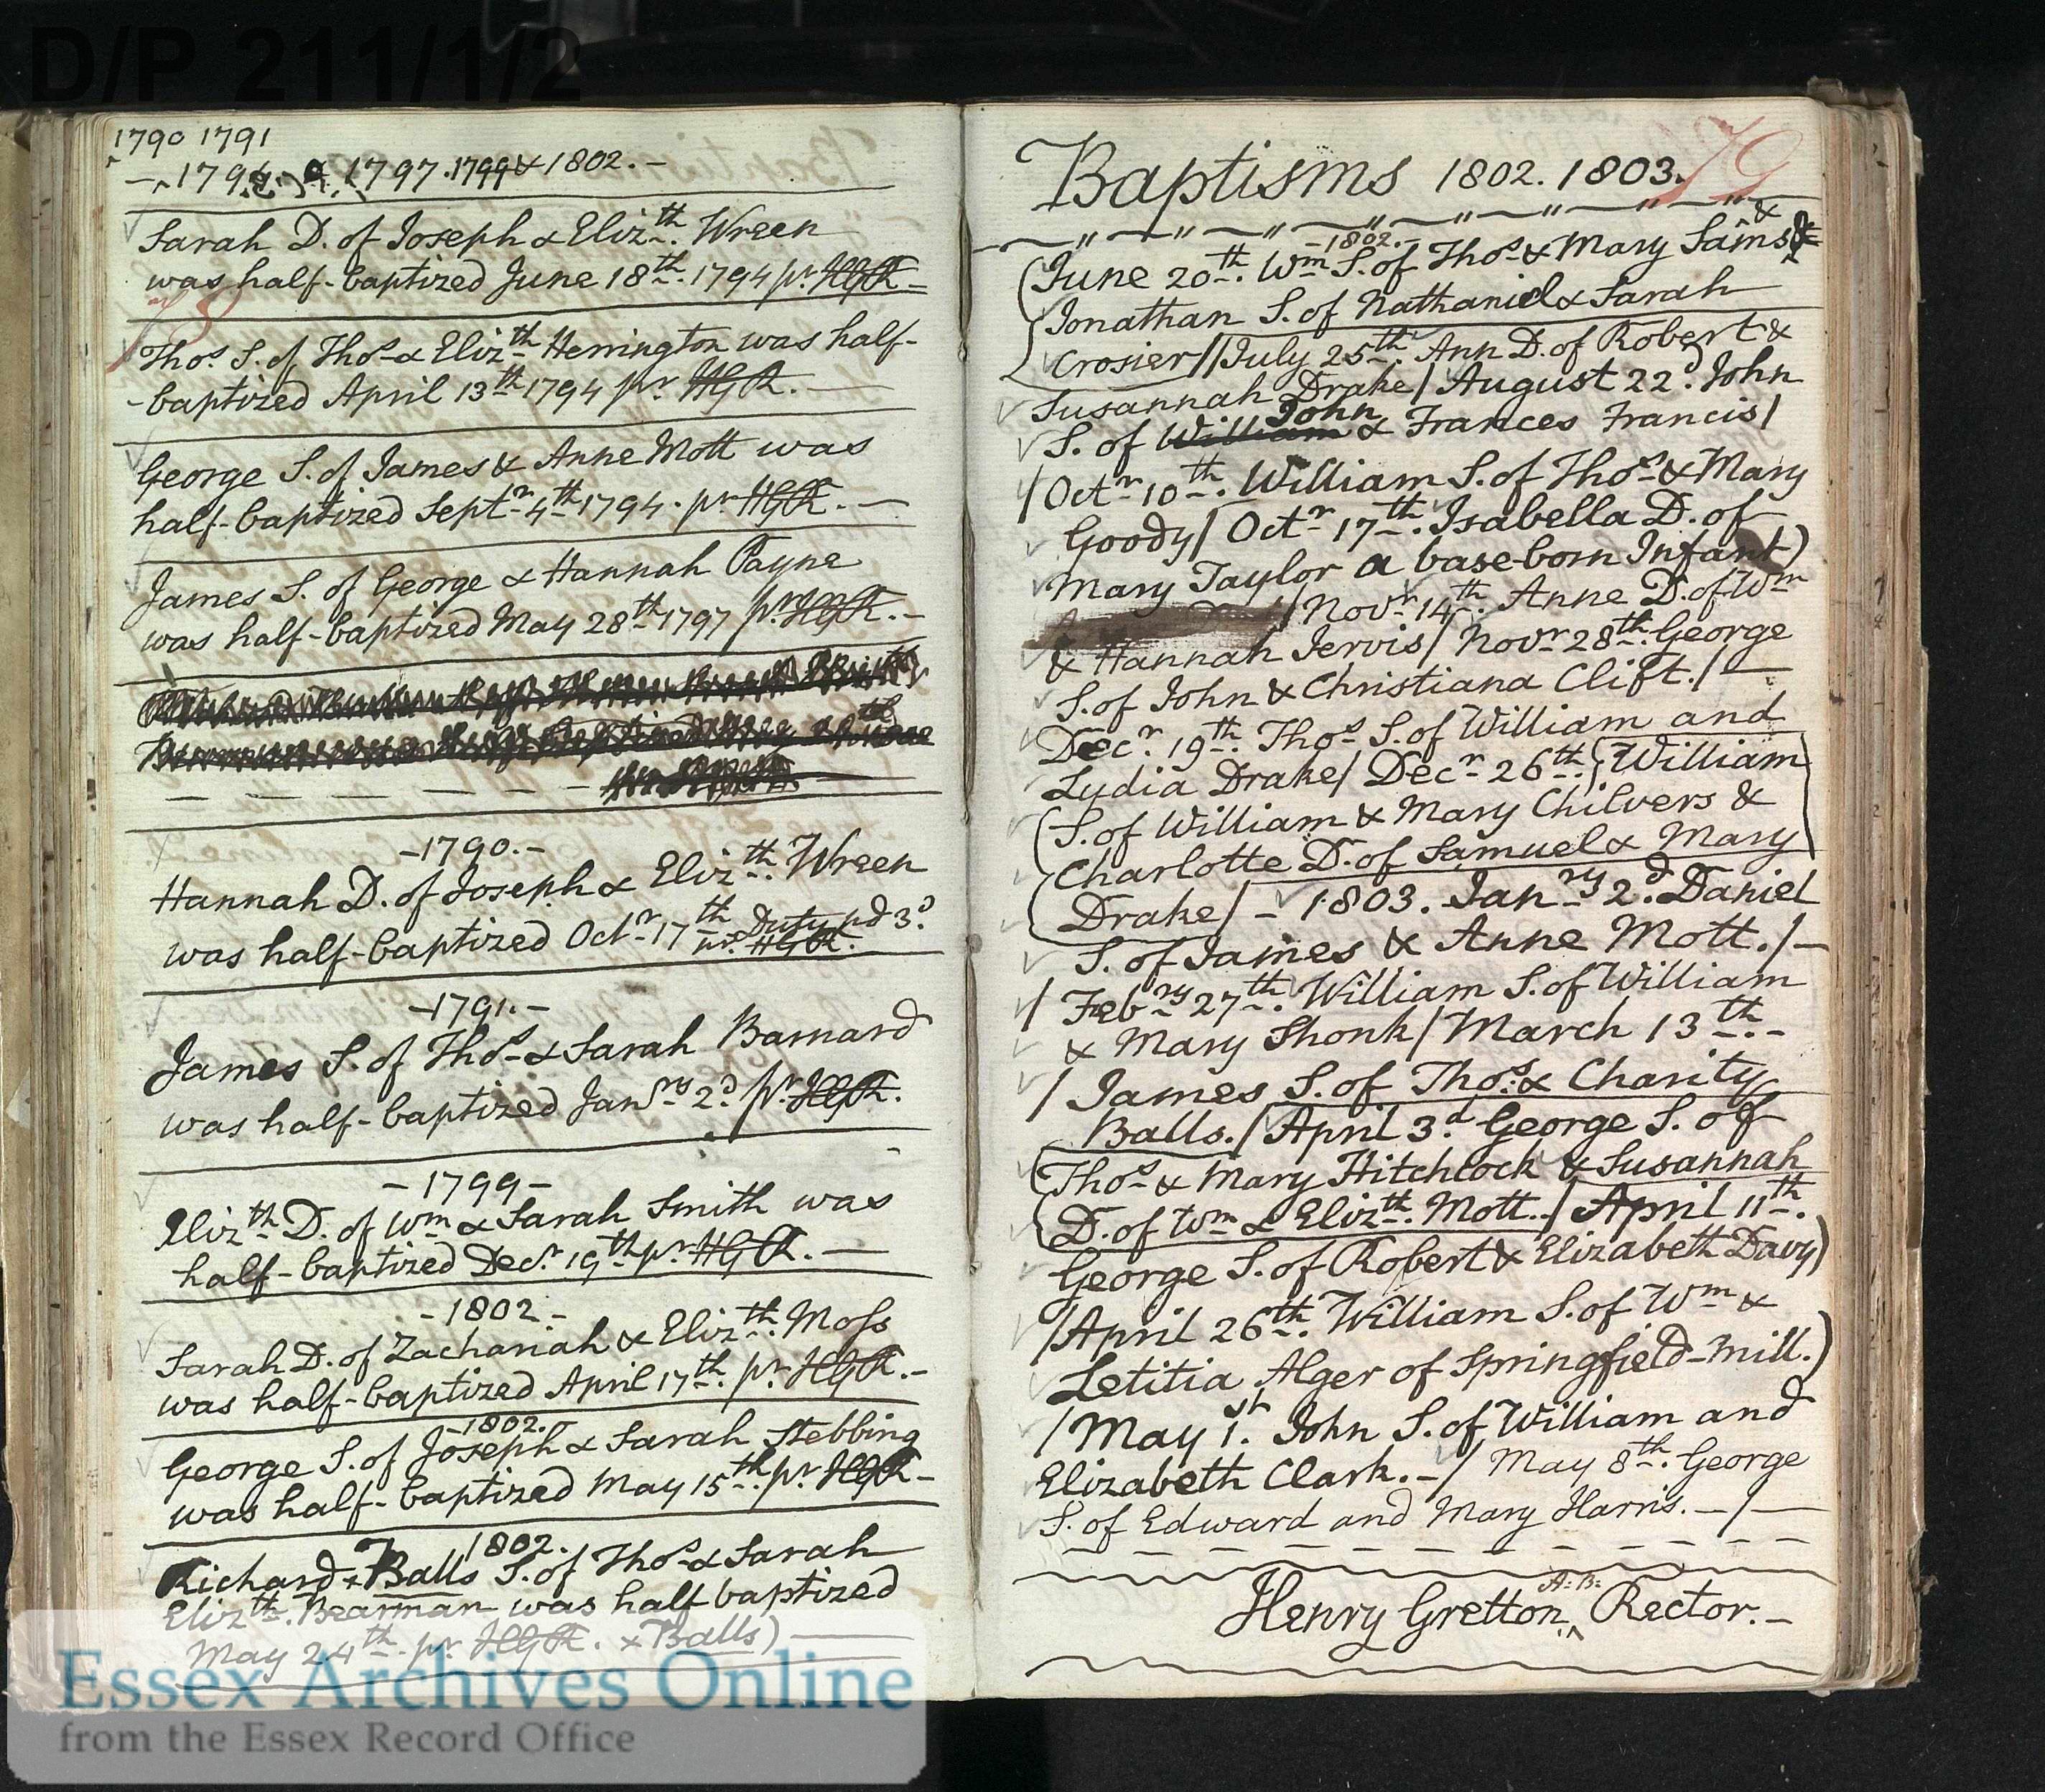 May 24th 1802 half baptism, Richard Balls Bearman. Note also James son of Thomas and Charity Balls on facing page